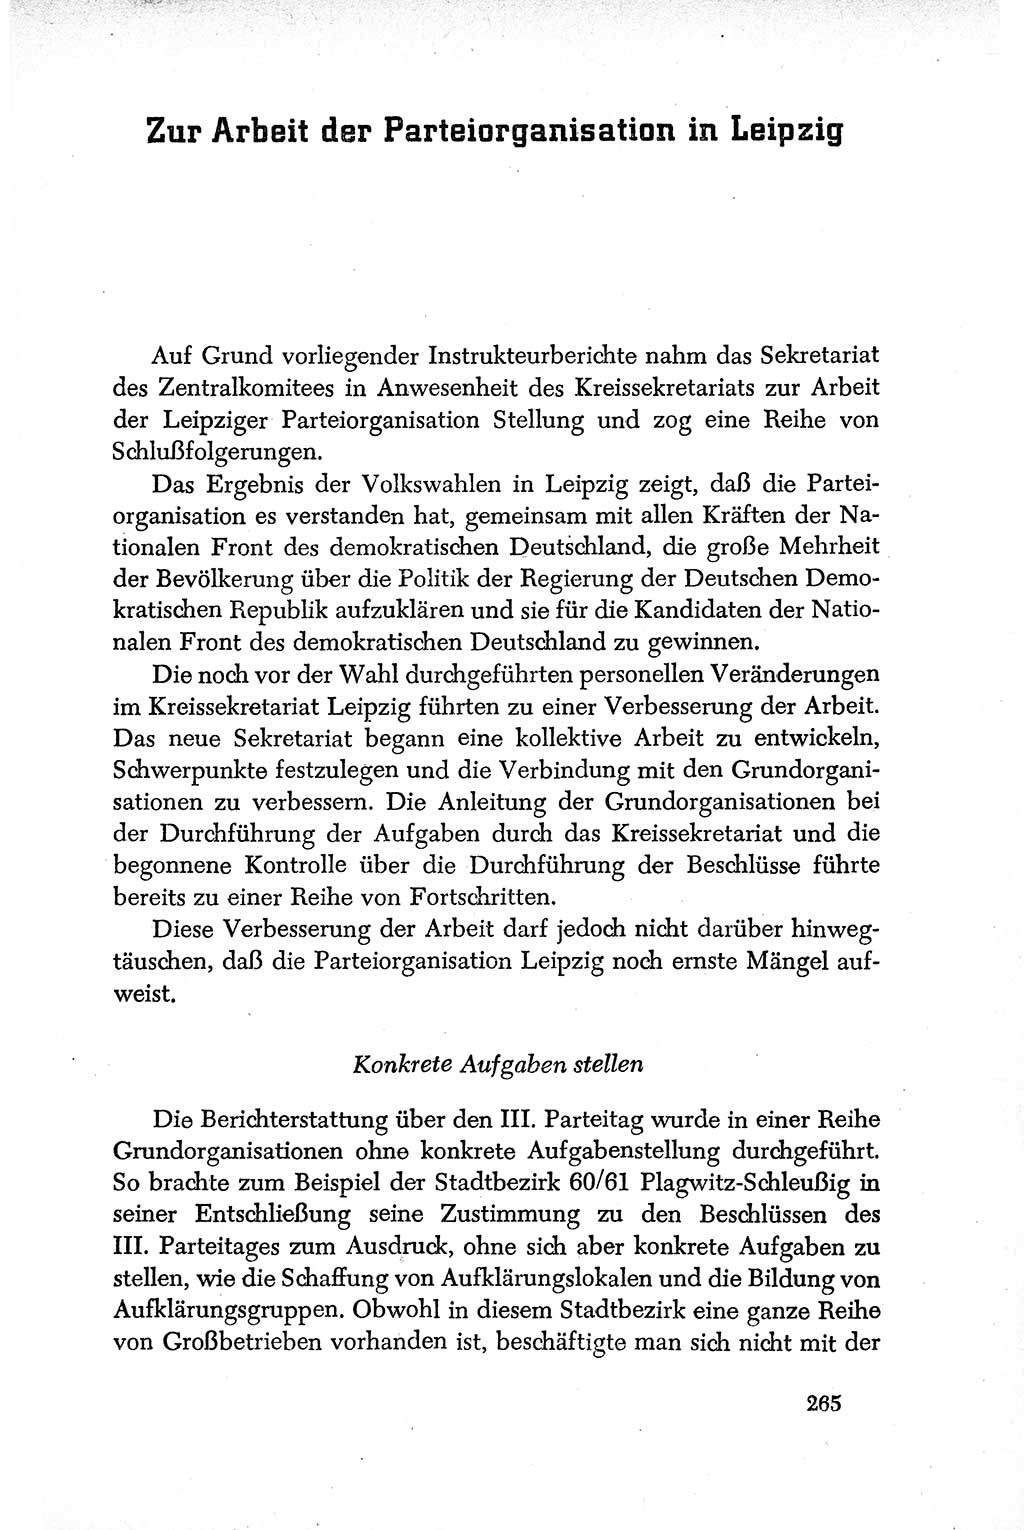 Dokumente der Sozialistischen Einheitspartei Deutschlands (SED) [Deutsche Demokratische Republik (DDR)] 1950-1952, Seite 265 (Dok. SED DDR 1950-1952, S. 265)